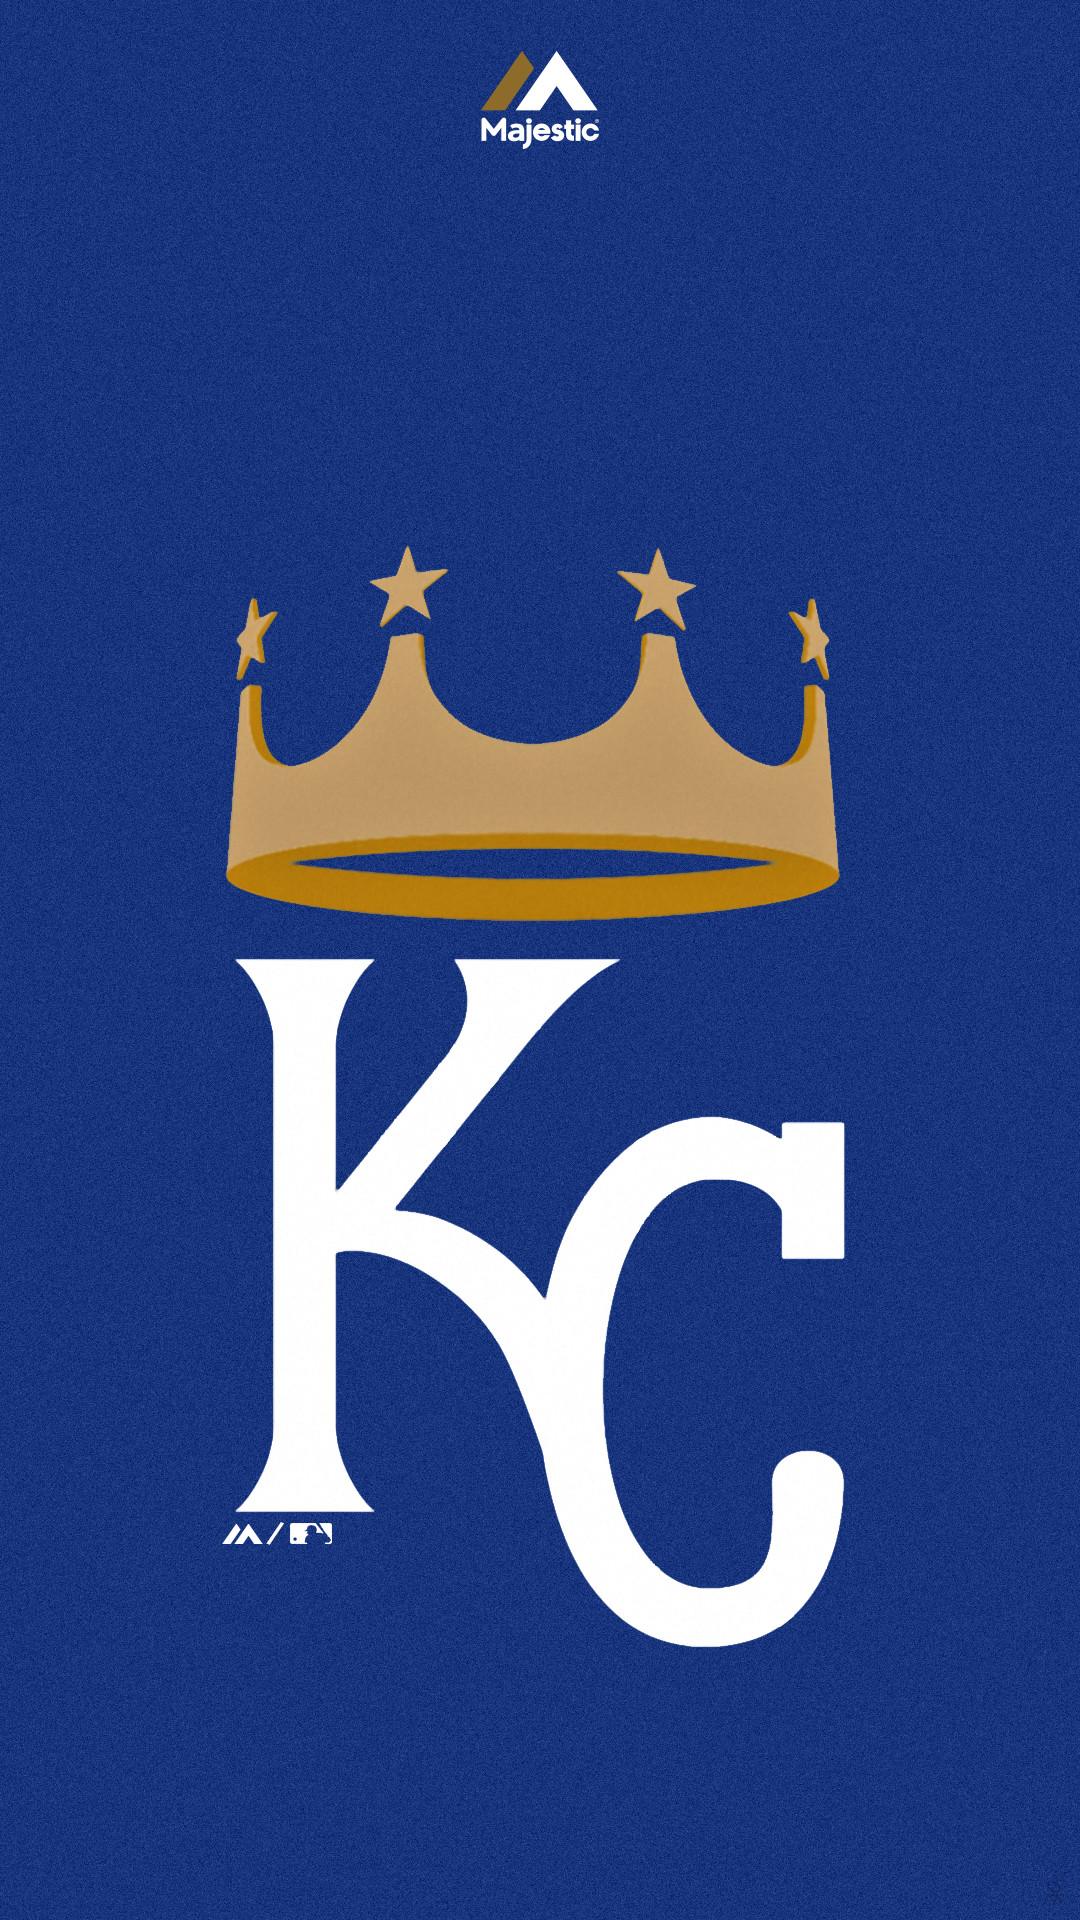 Kansas City Royals 2019 Wallpapers - Wallpaper Cave